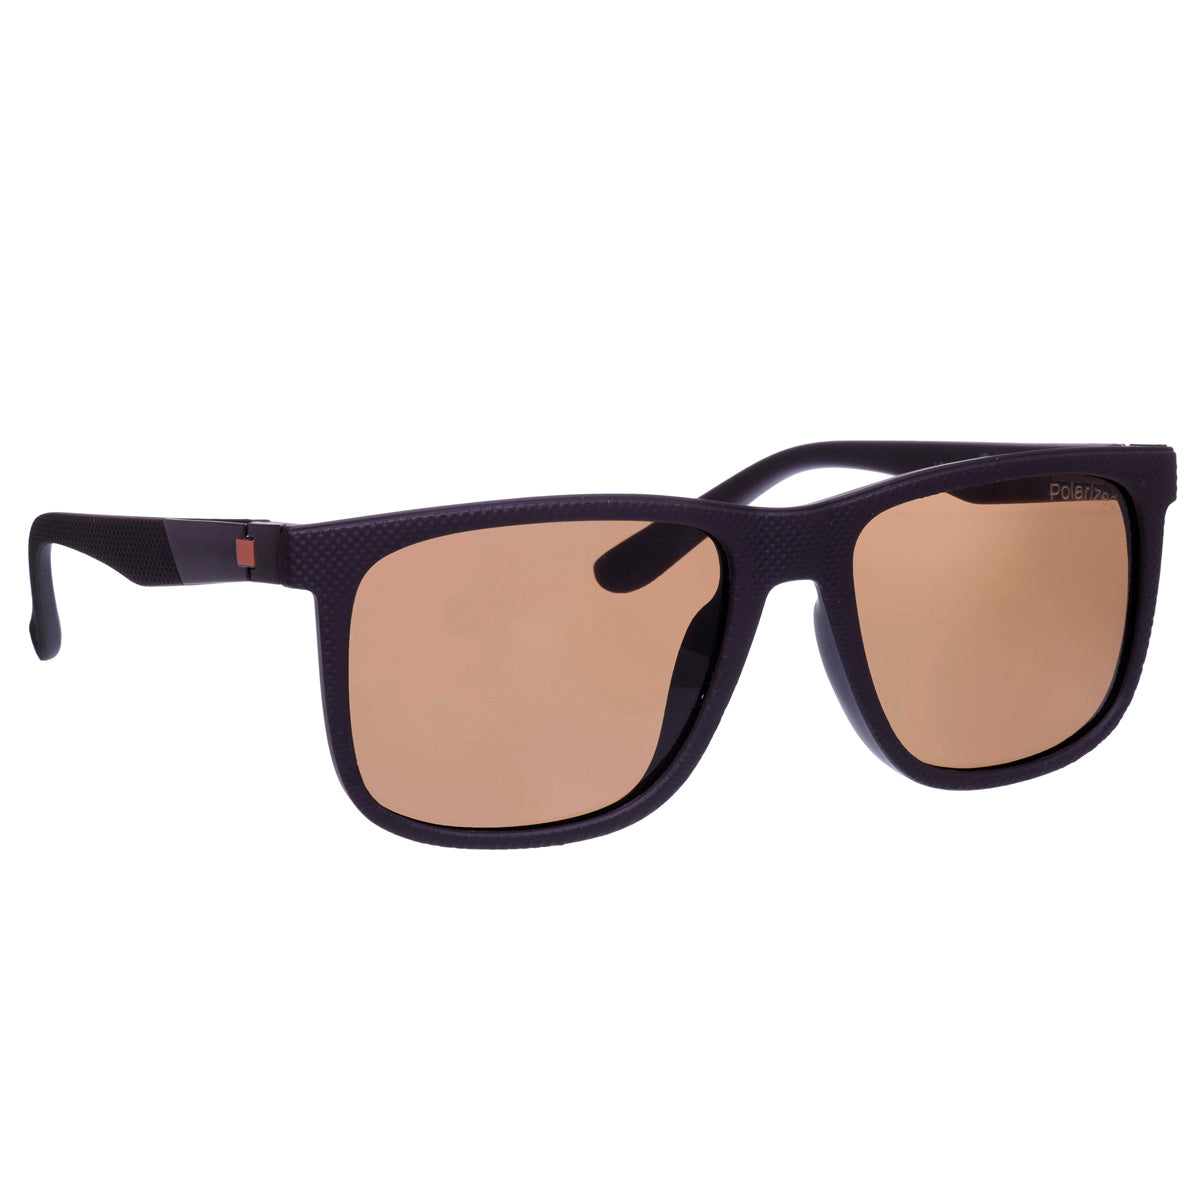 Polarized sunglasses matte finish basic